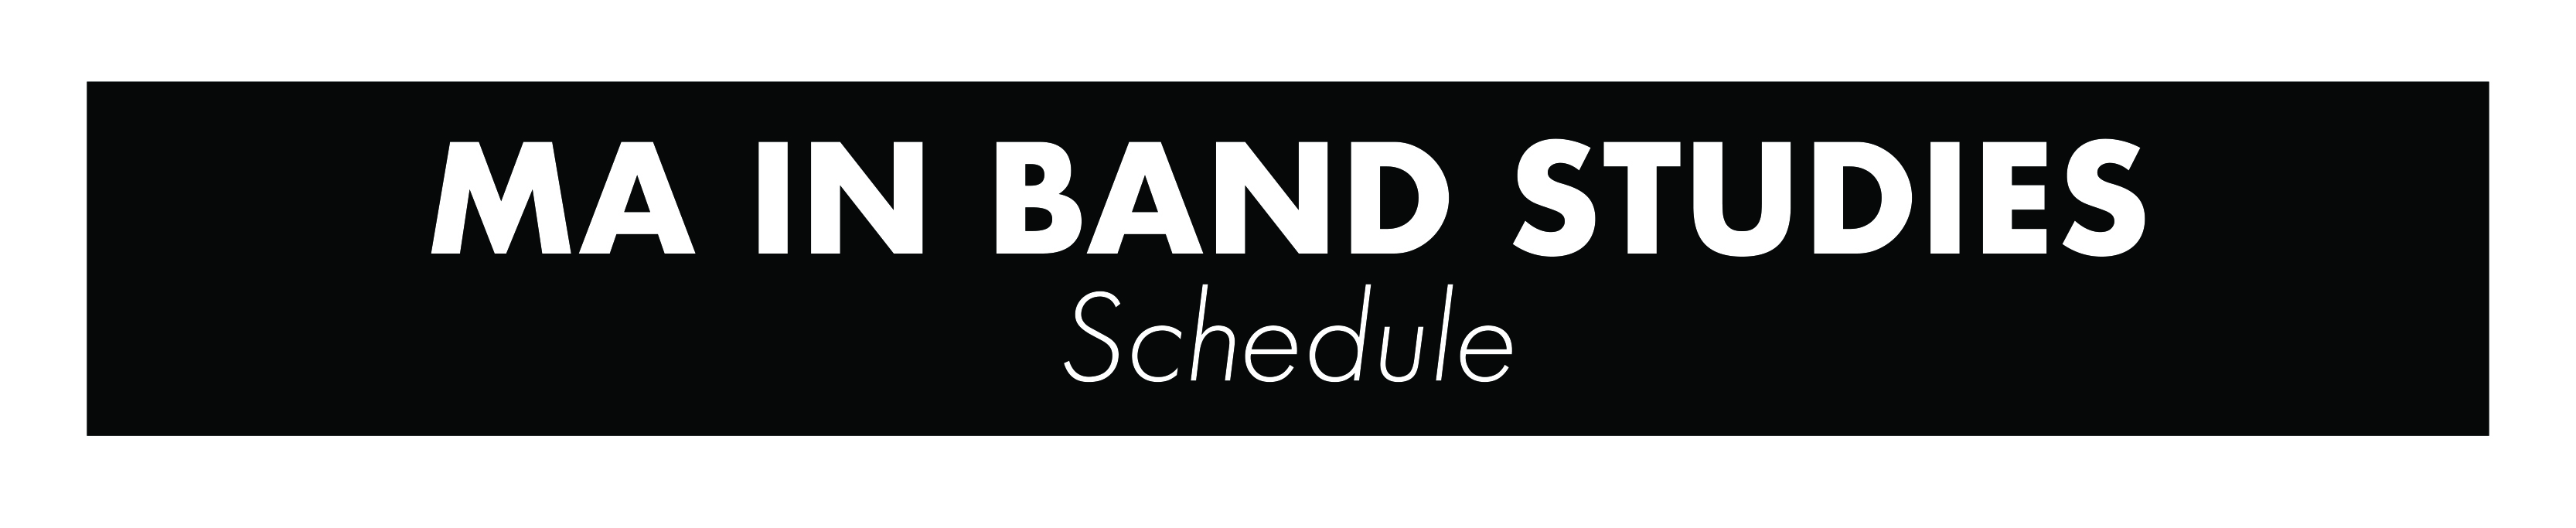 bandstudies_schedule